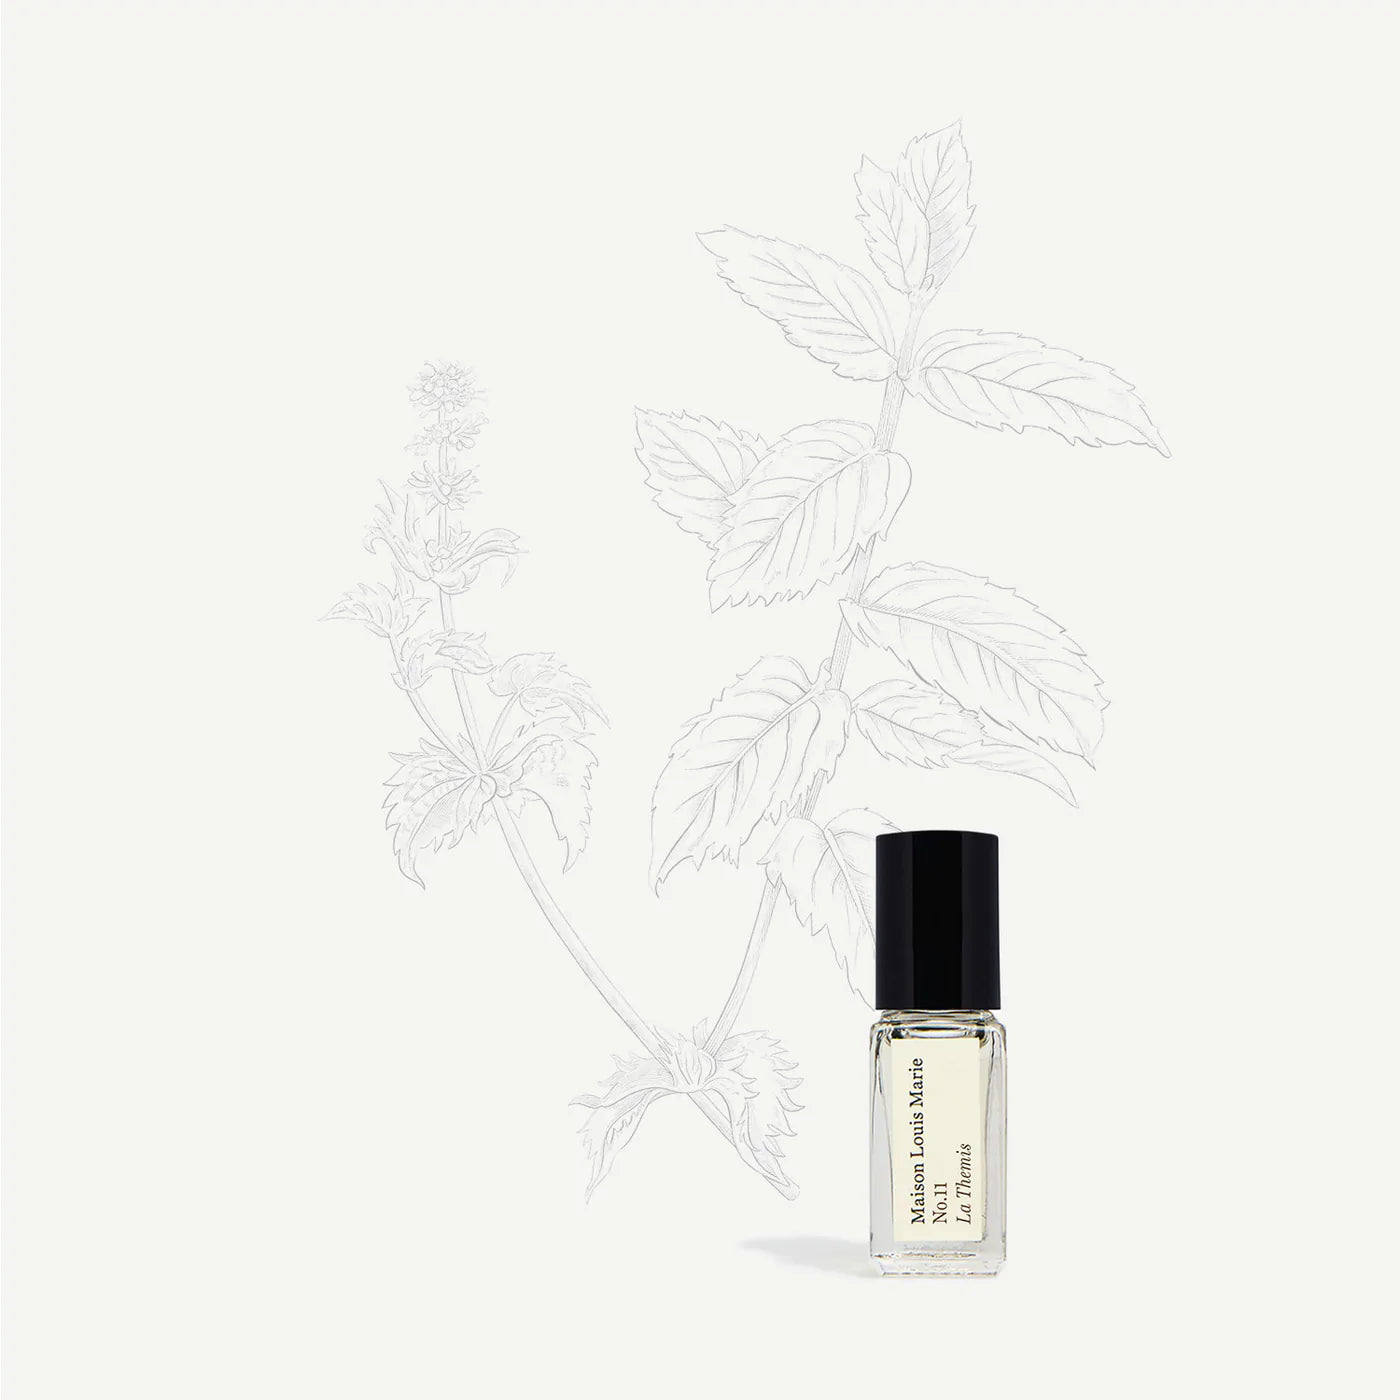 No.11 La Themis – 3ml Perfume Oil Roller